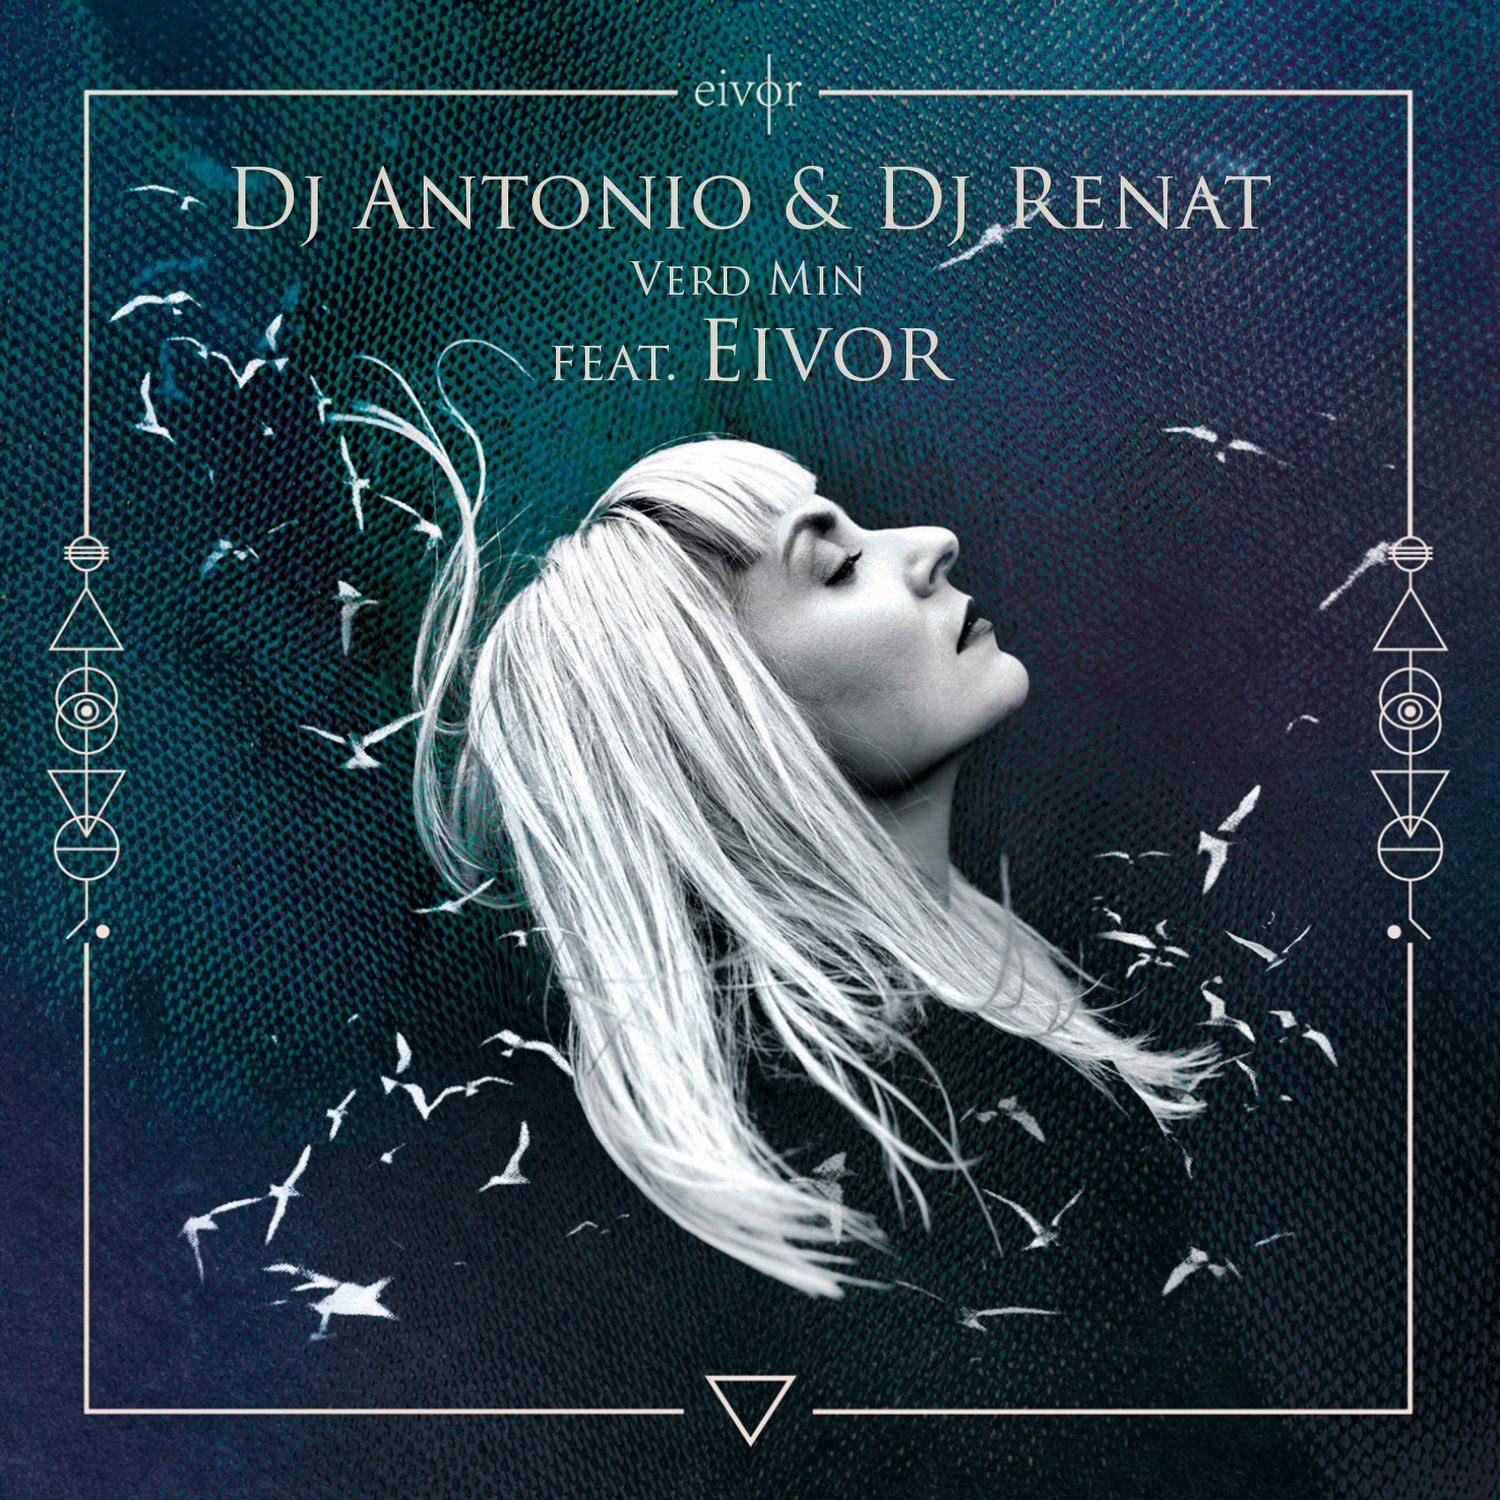 Luchdaich sìos Dj Antonio & Dj Renat - Verd Min (feat. Eivor) (Club Mix)